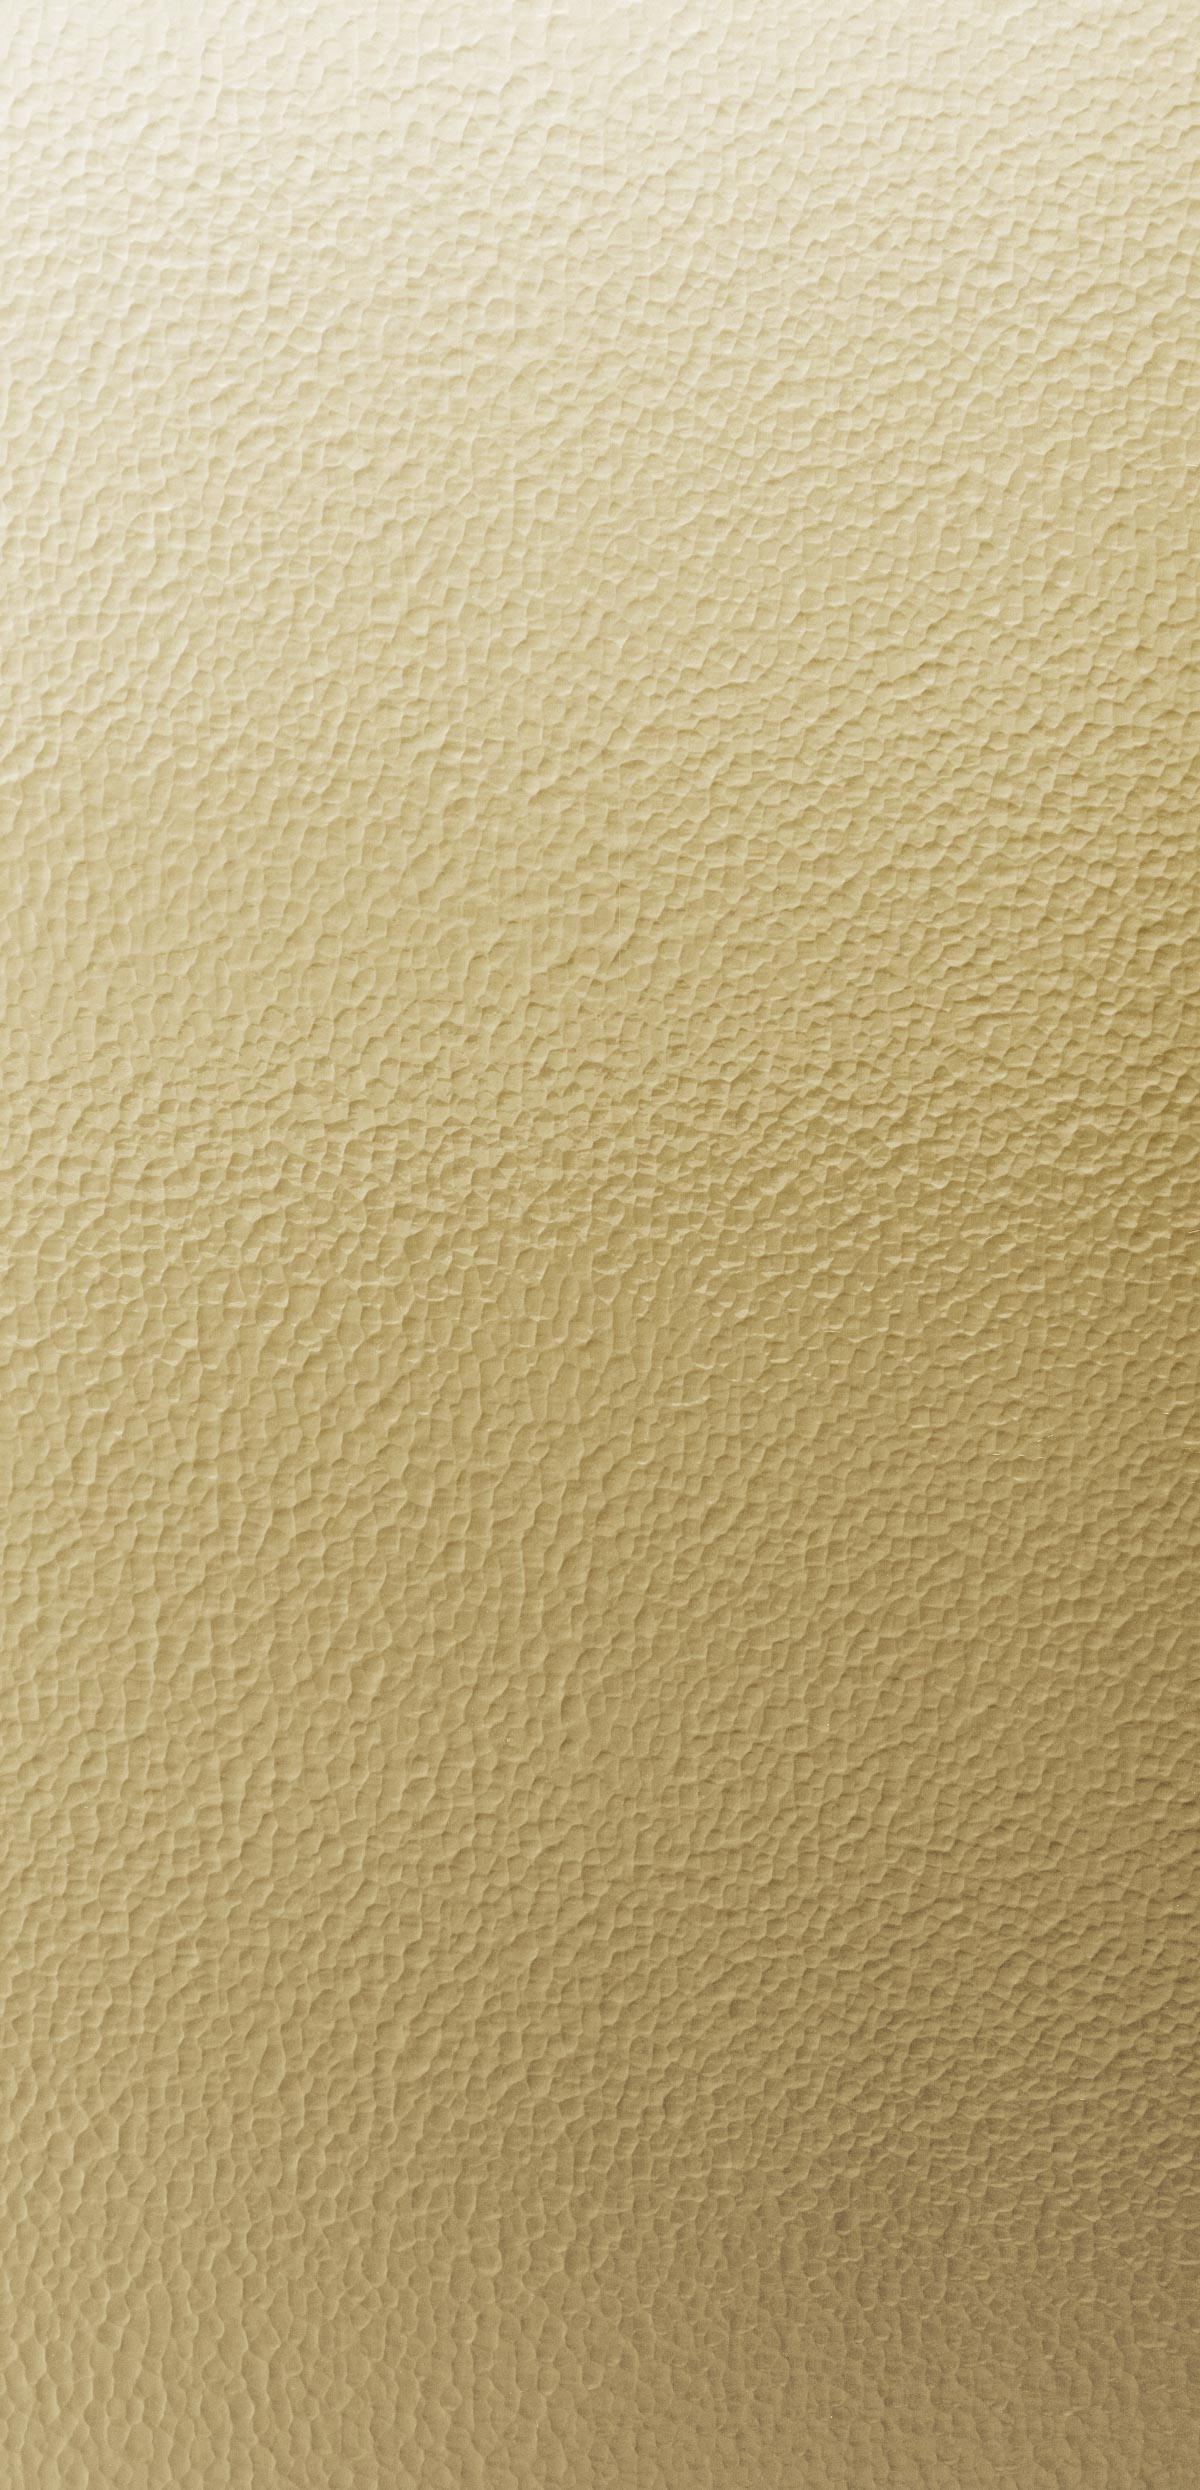 Panel Brushed Brass 4042 - Skin